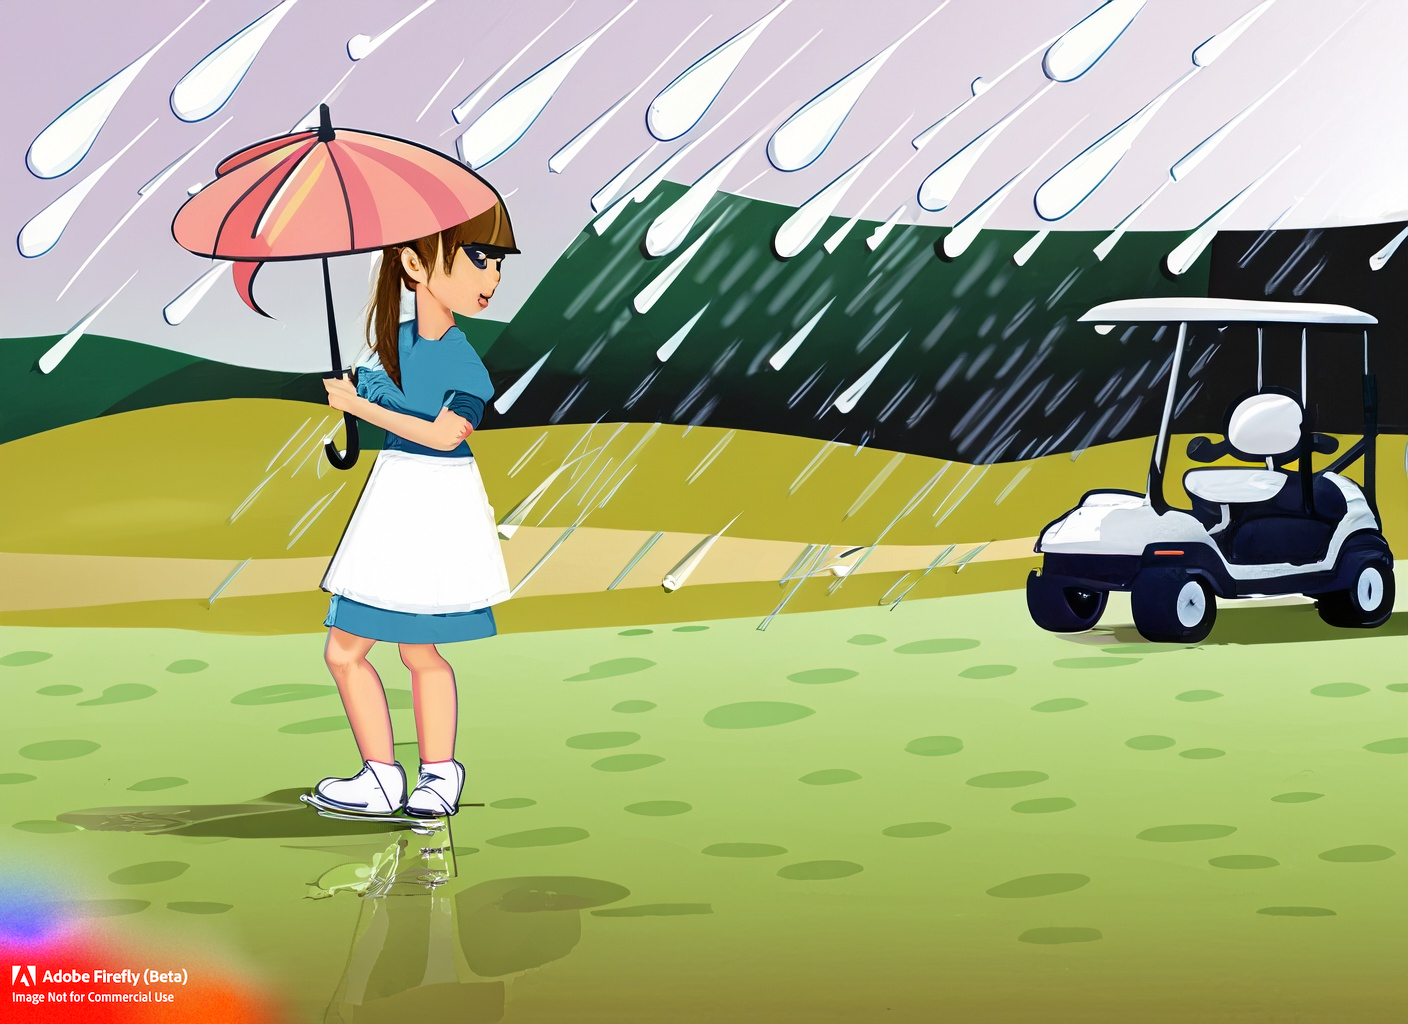 How Big Is A Golf Umbrella